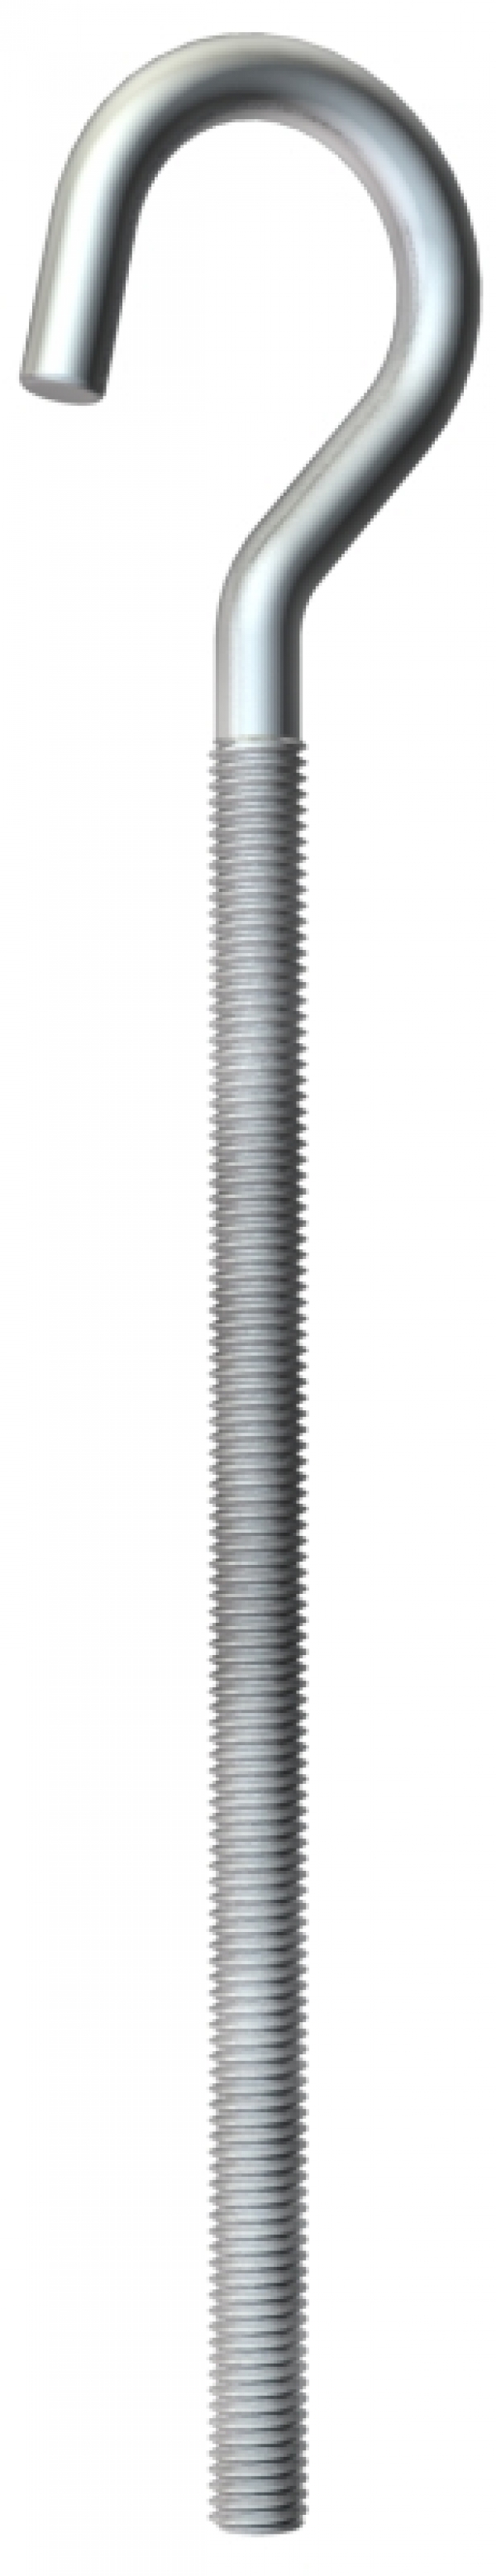 3470148 - OBO BETTERMANN Крюк потолочный M5x125мм (867 M5X125 G).